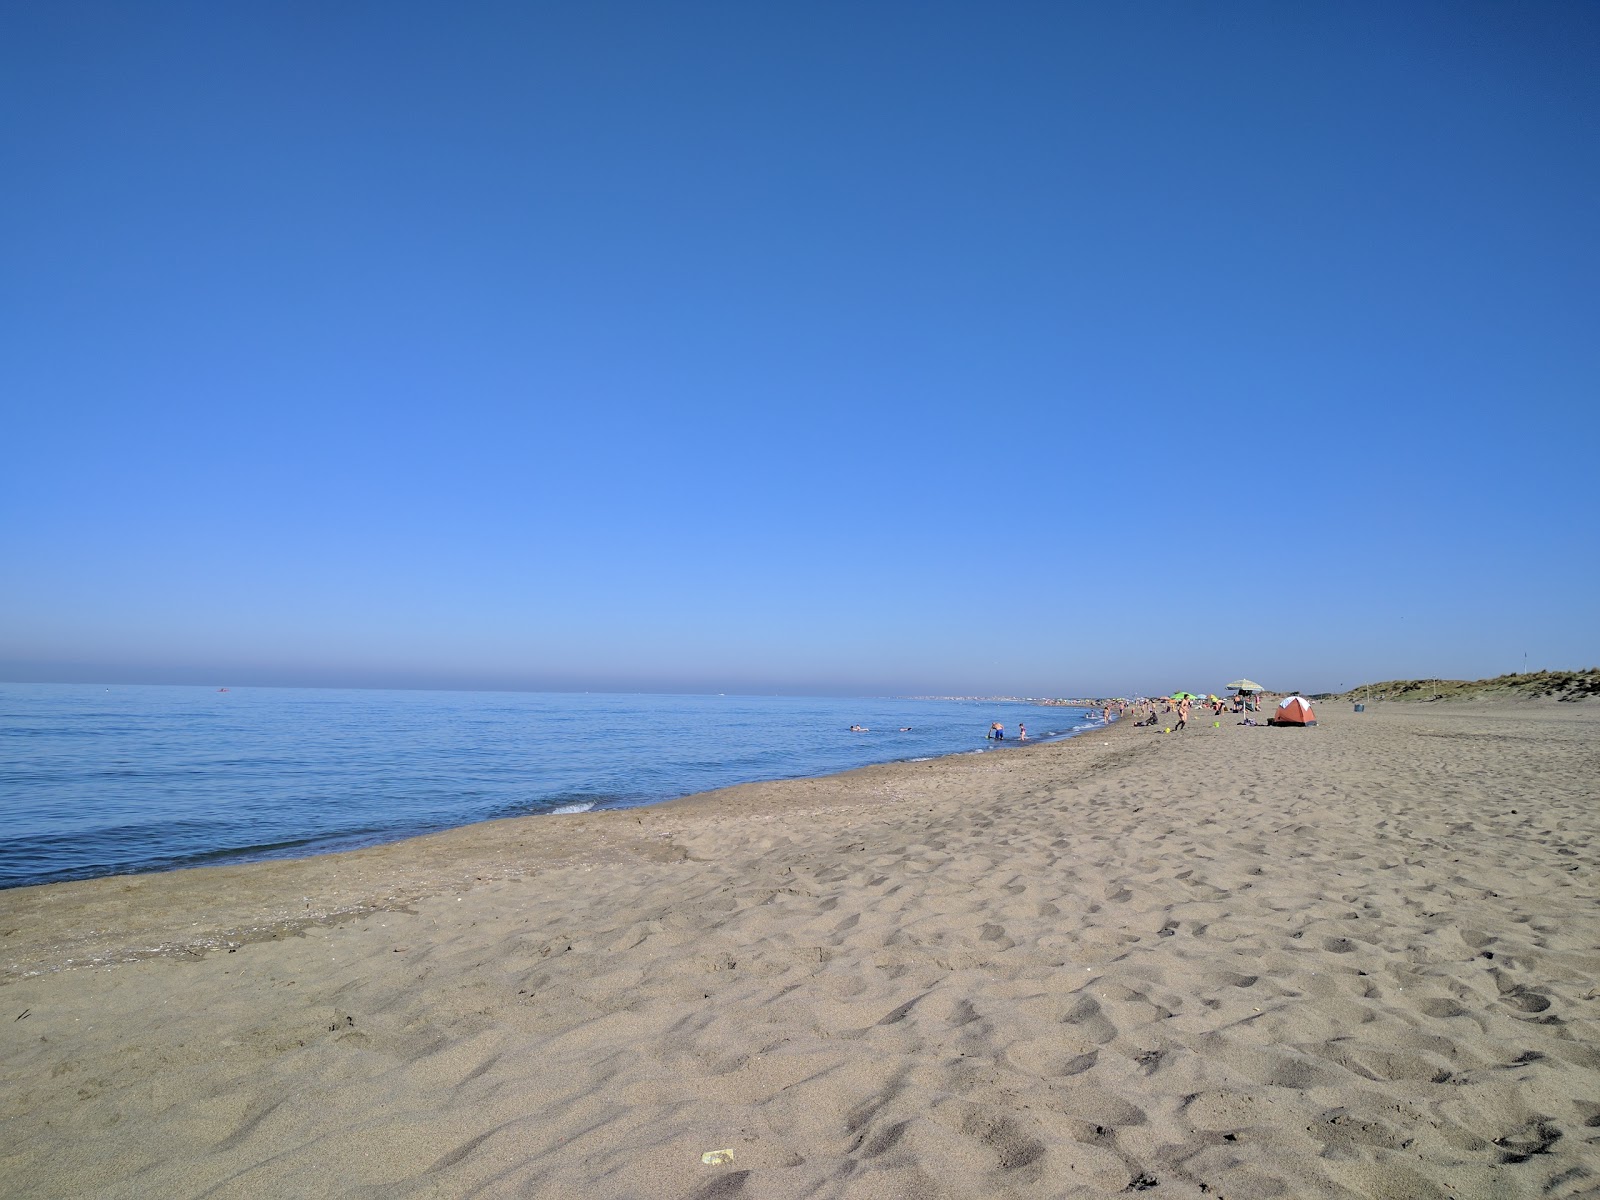 Zdjęcie Castel Porziano beach z powierzchnią brązowy piasek